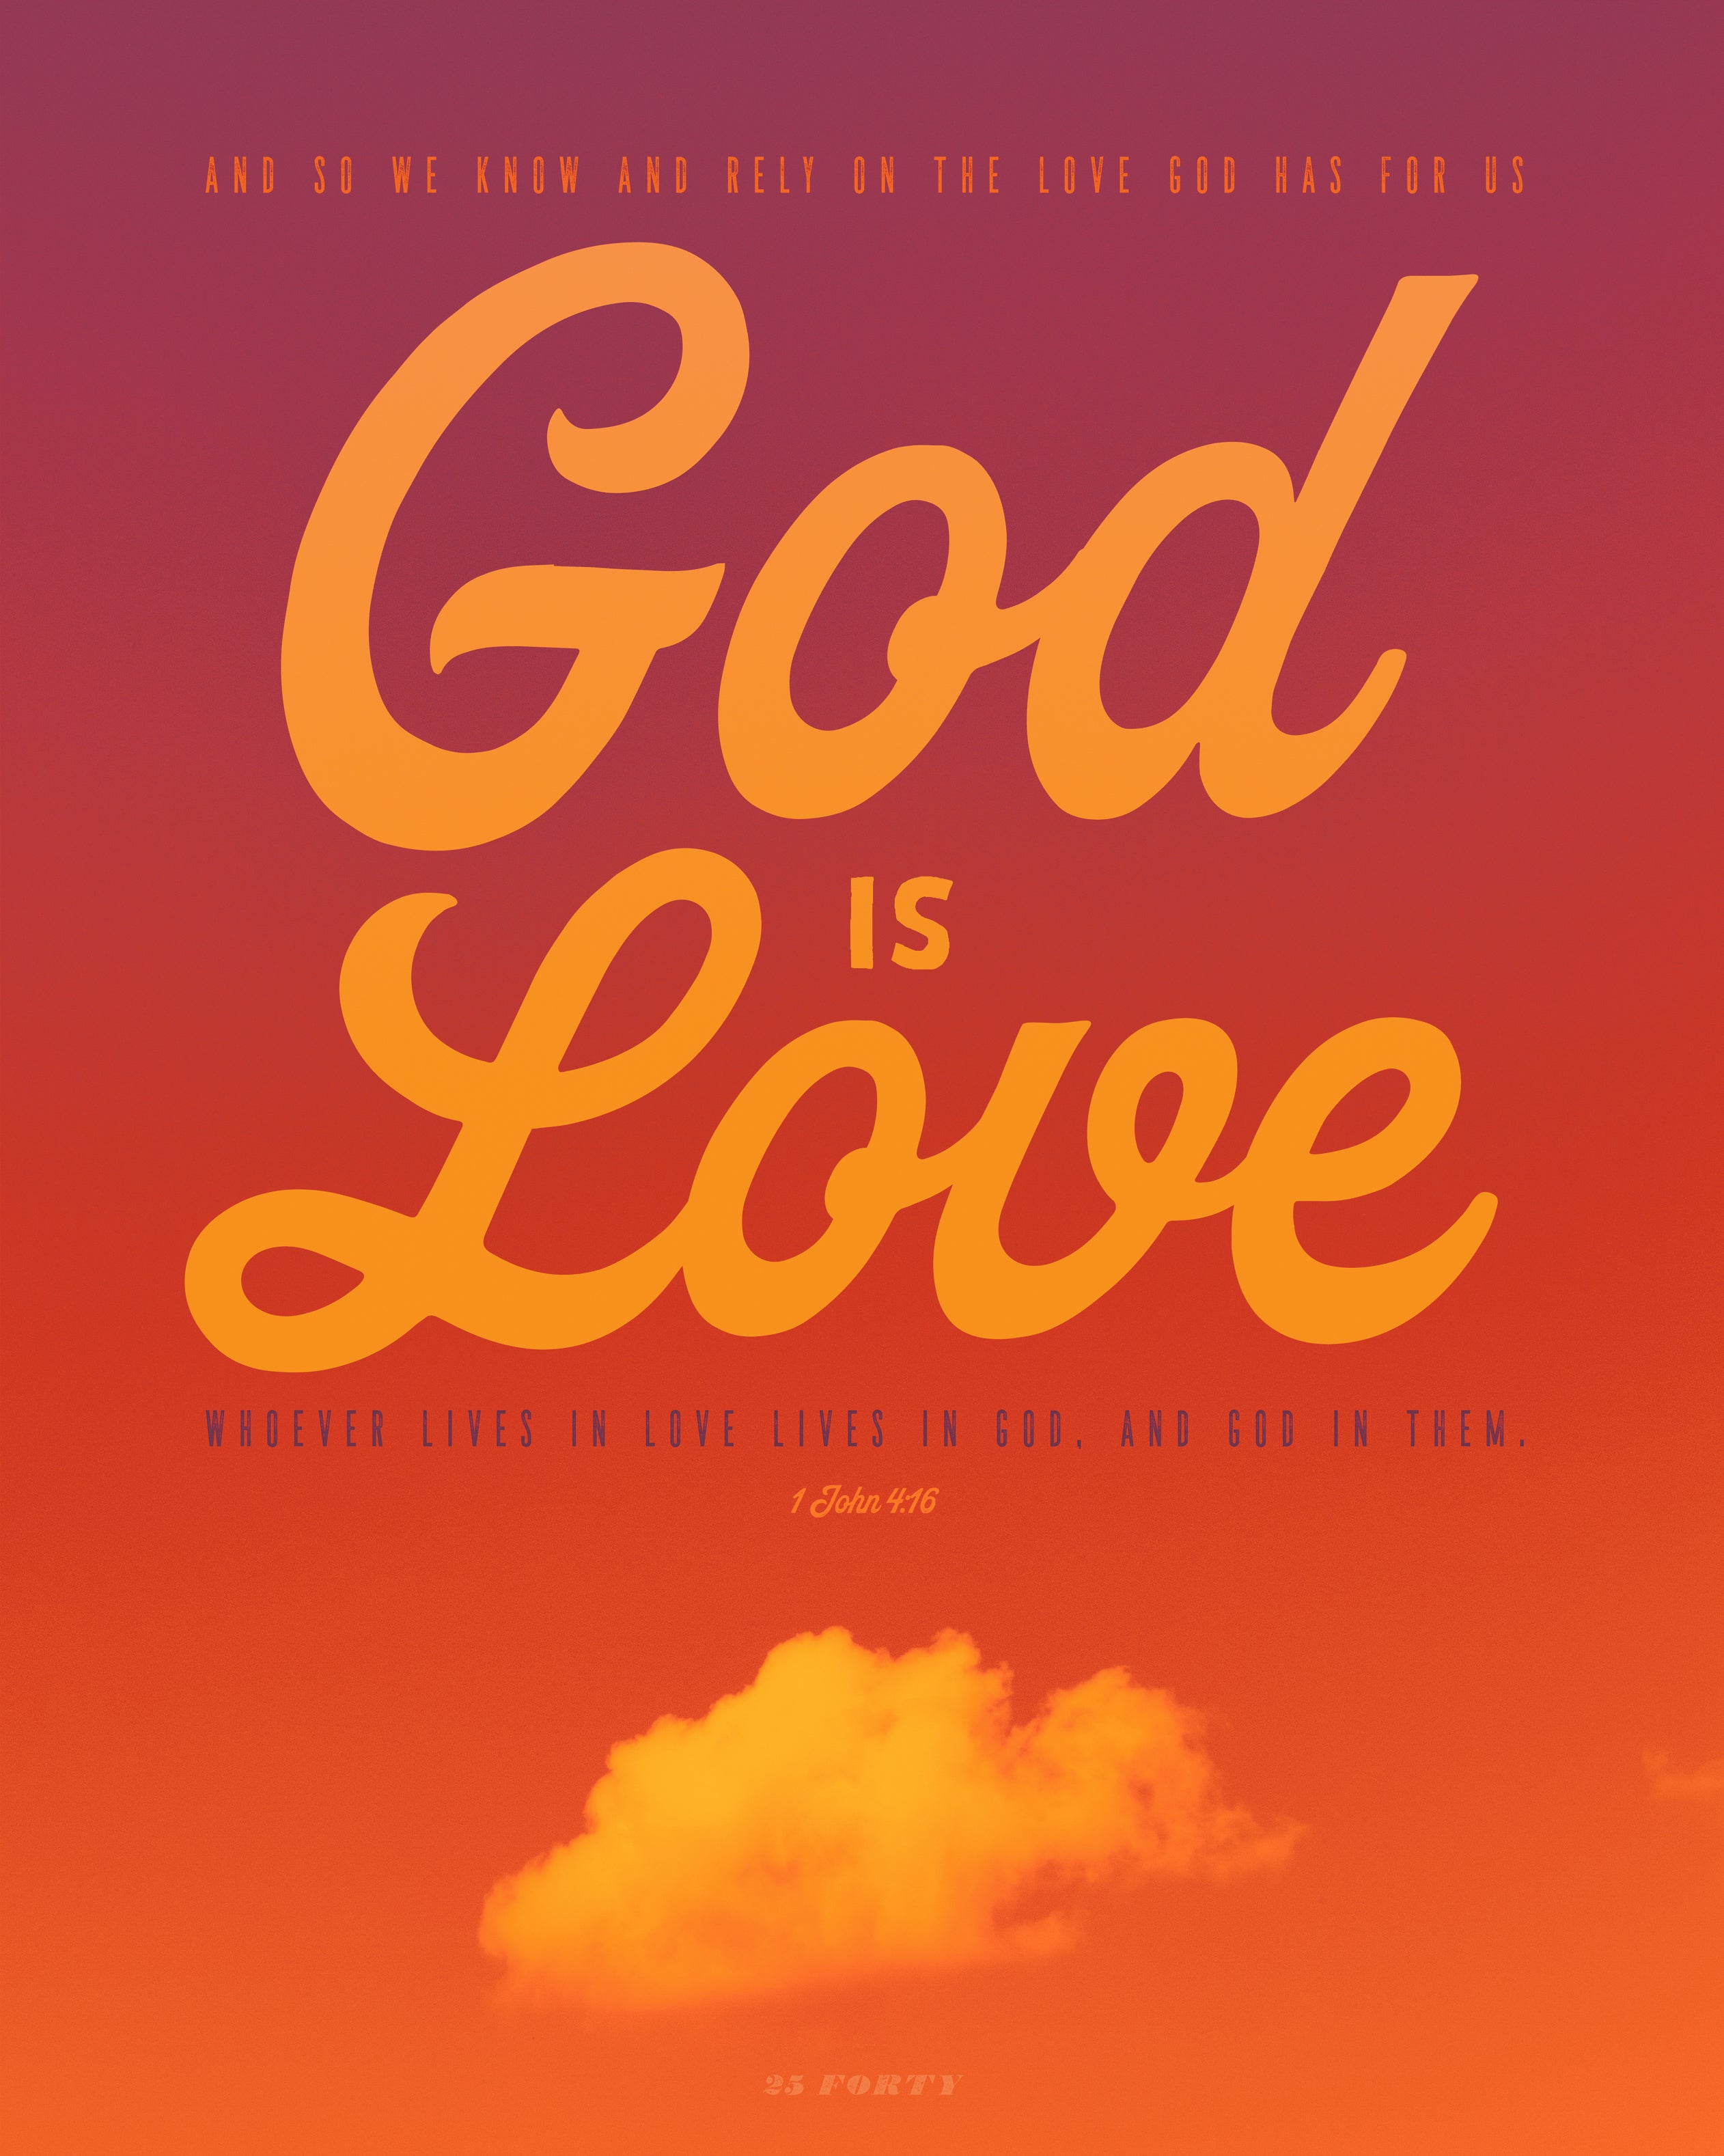 1 john 4:16 god is love